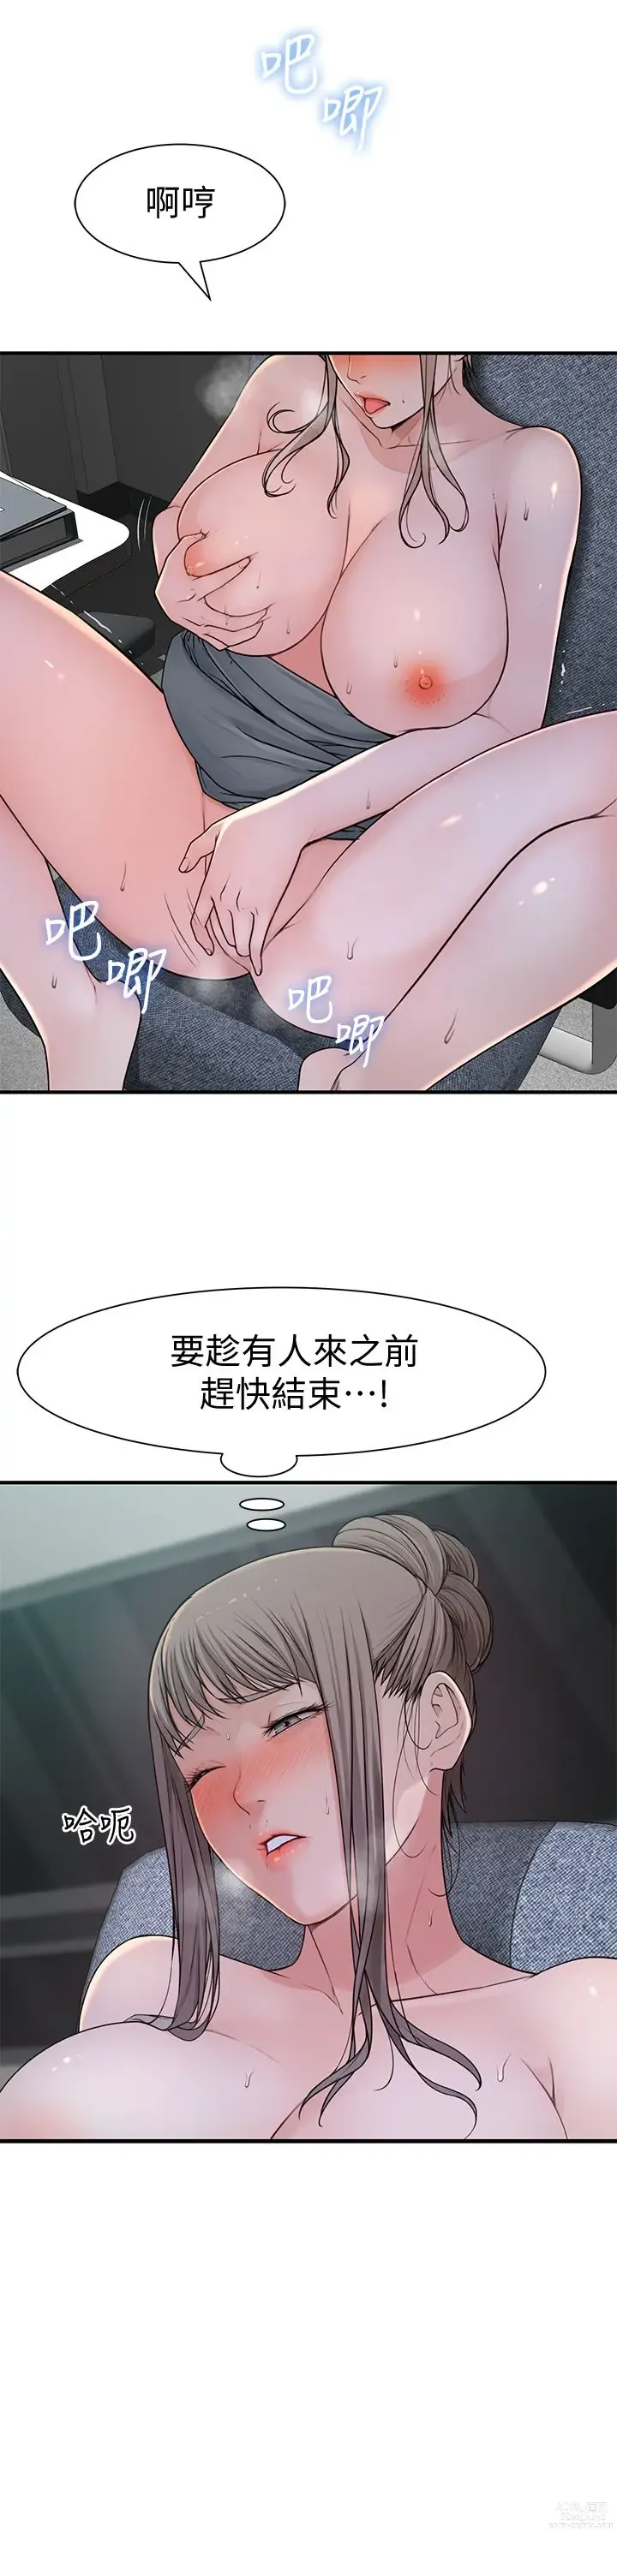 Page 15 of manga 我们的特殊关系／Between Us [中文] [已完结]（下）